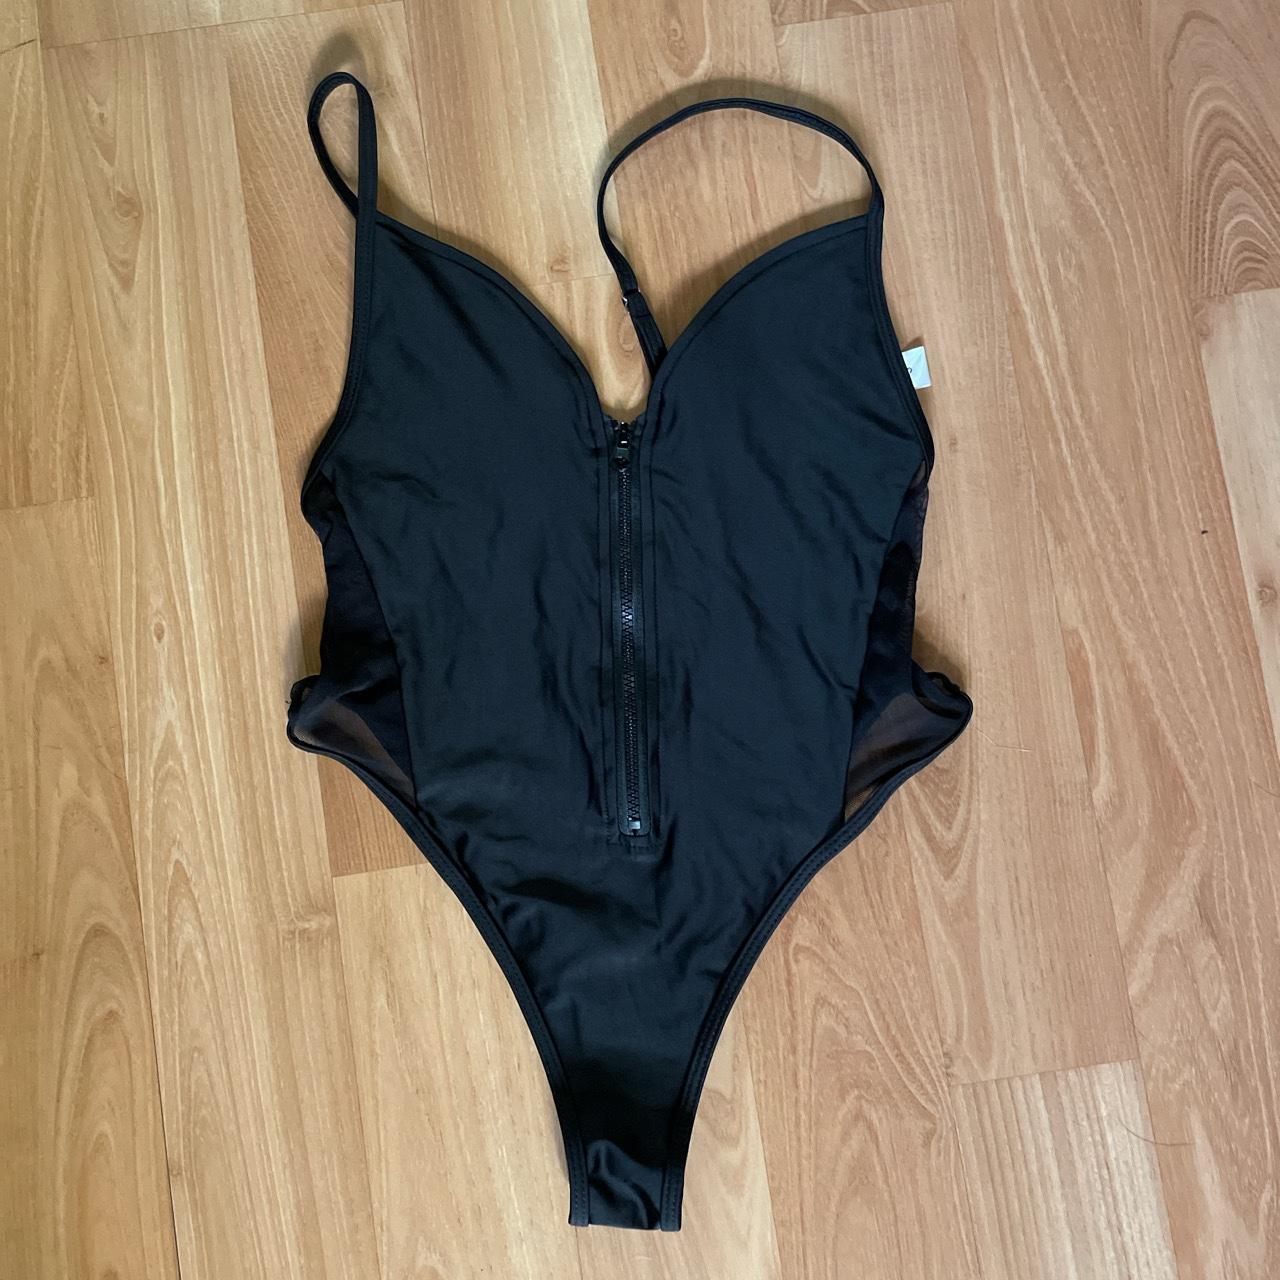 Black zip up swimsuit #nwot #bodysuit - Depop